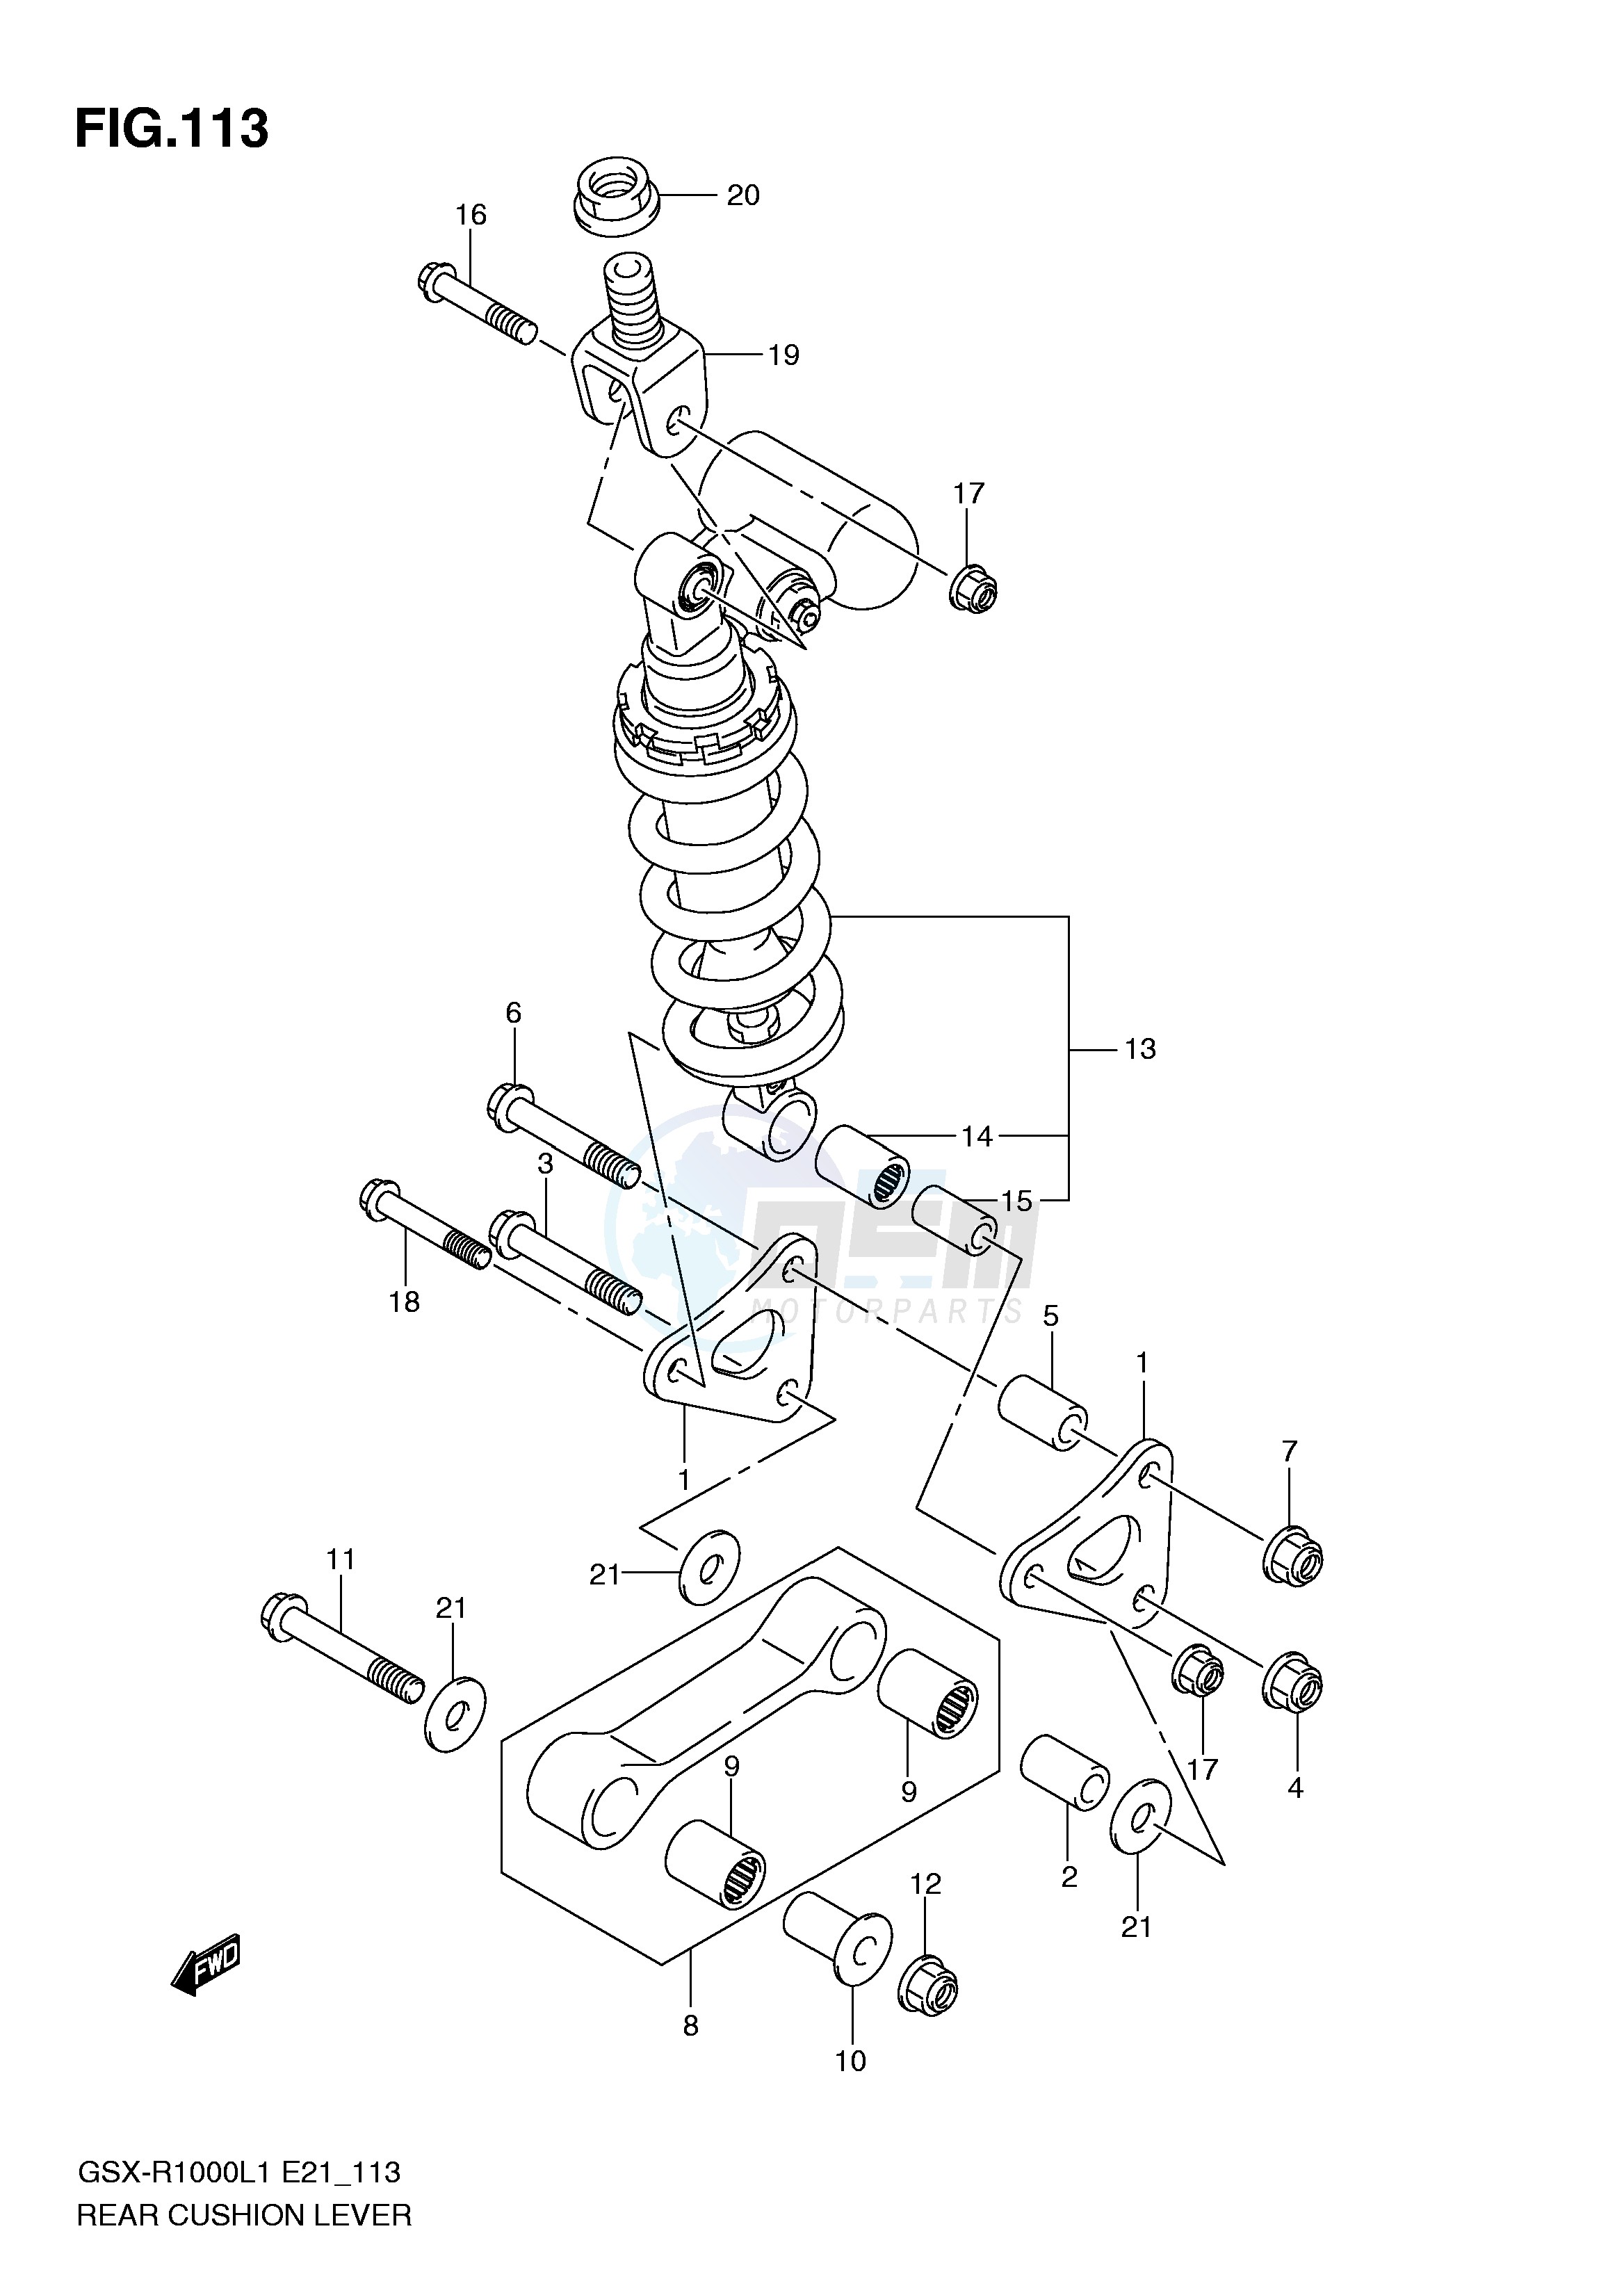 REAR CUSHION LEVER (GSX-R1000L1 E14) blueprint